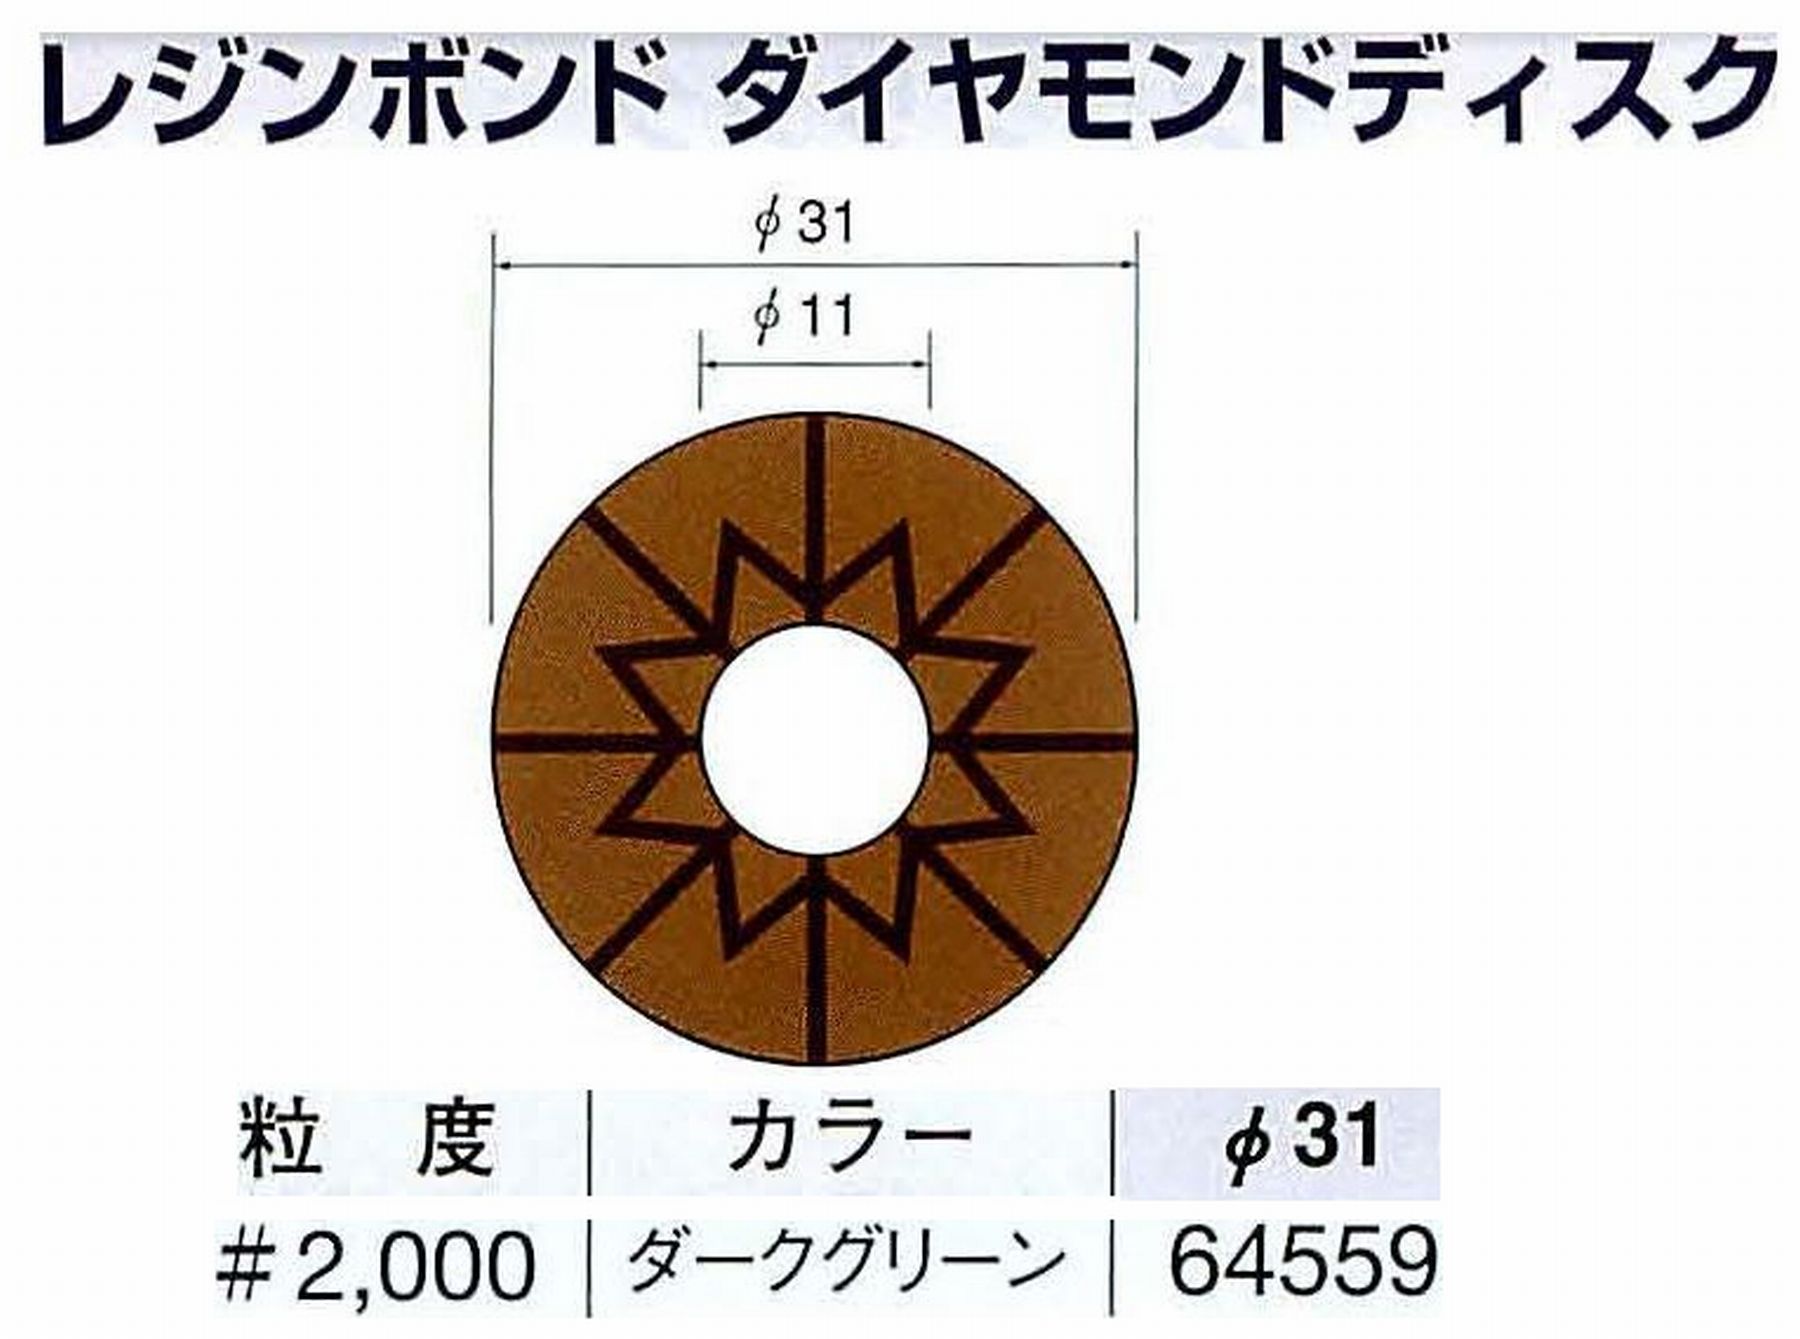 ナカニシ/NAKANISHI アングルグラインダ(電動・エアー) アングルアタッチメント専用工具 レジンボンド ダイヤモンドディスク(パターンタイプ) 64559